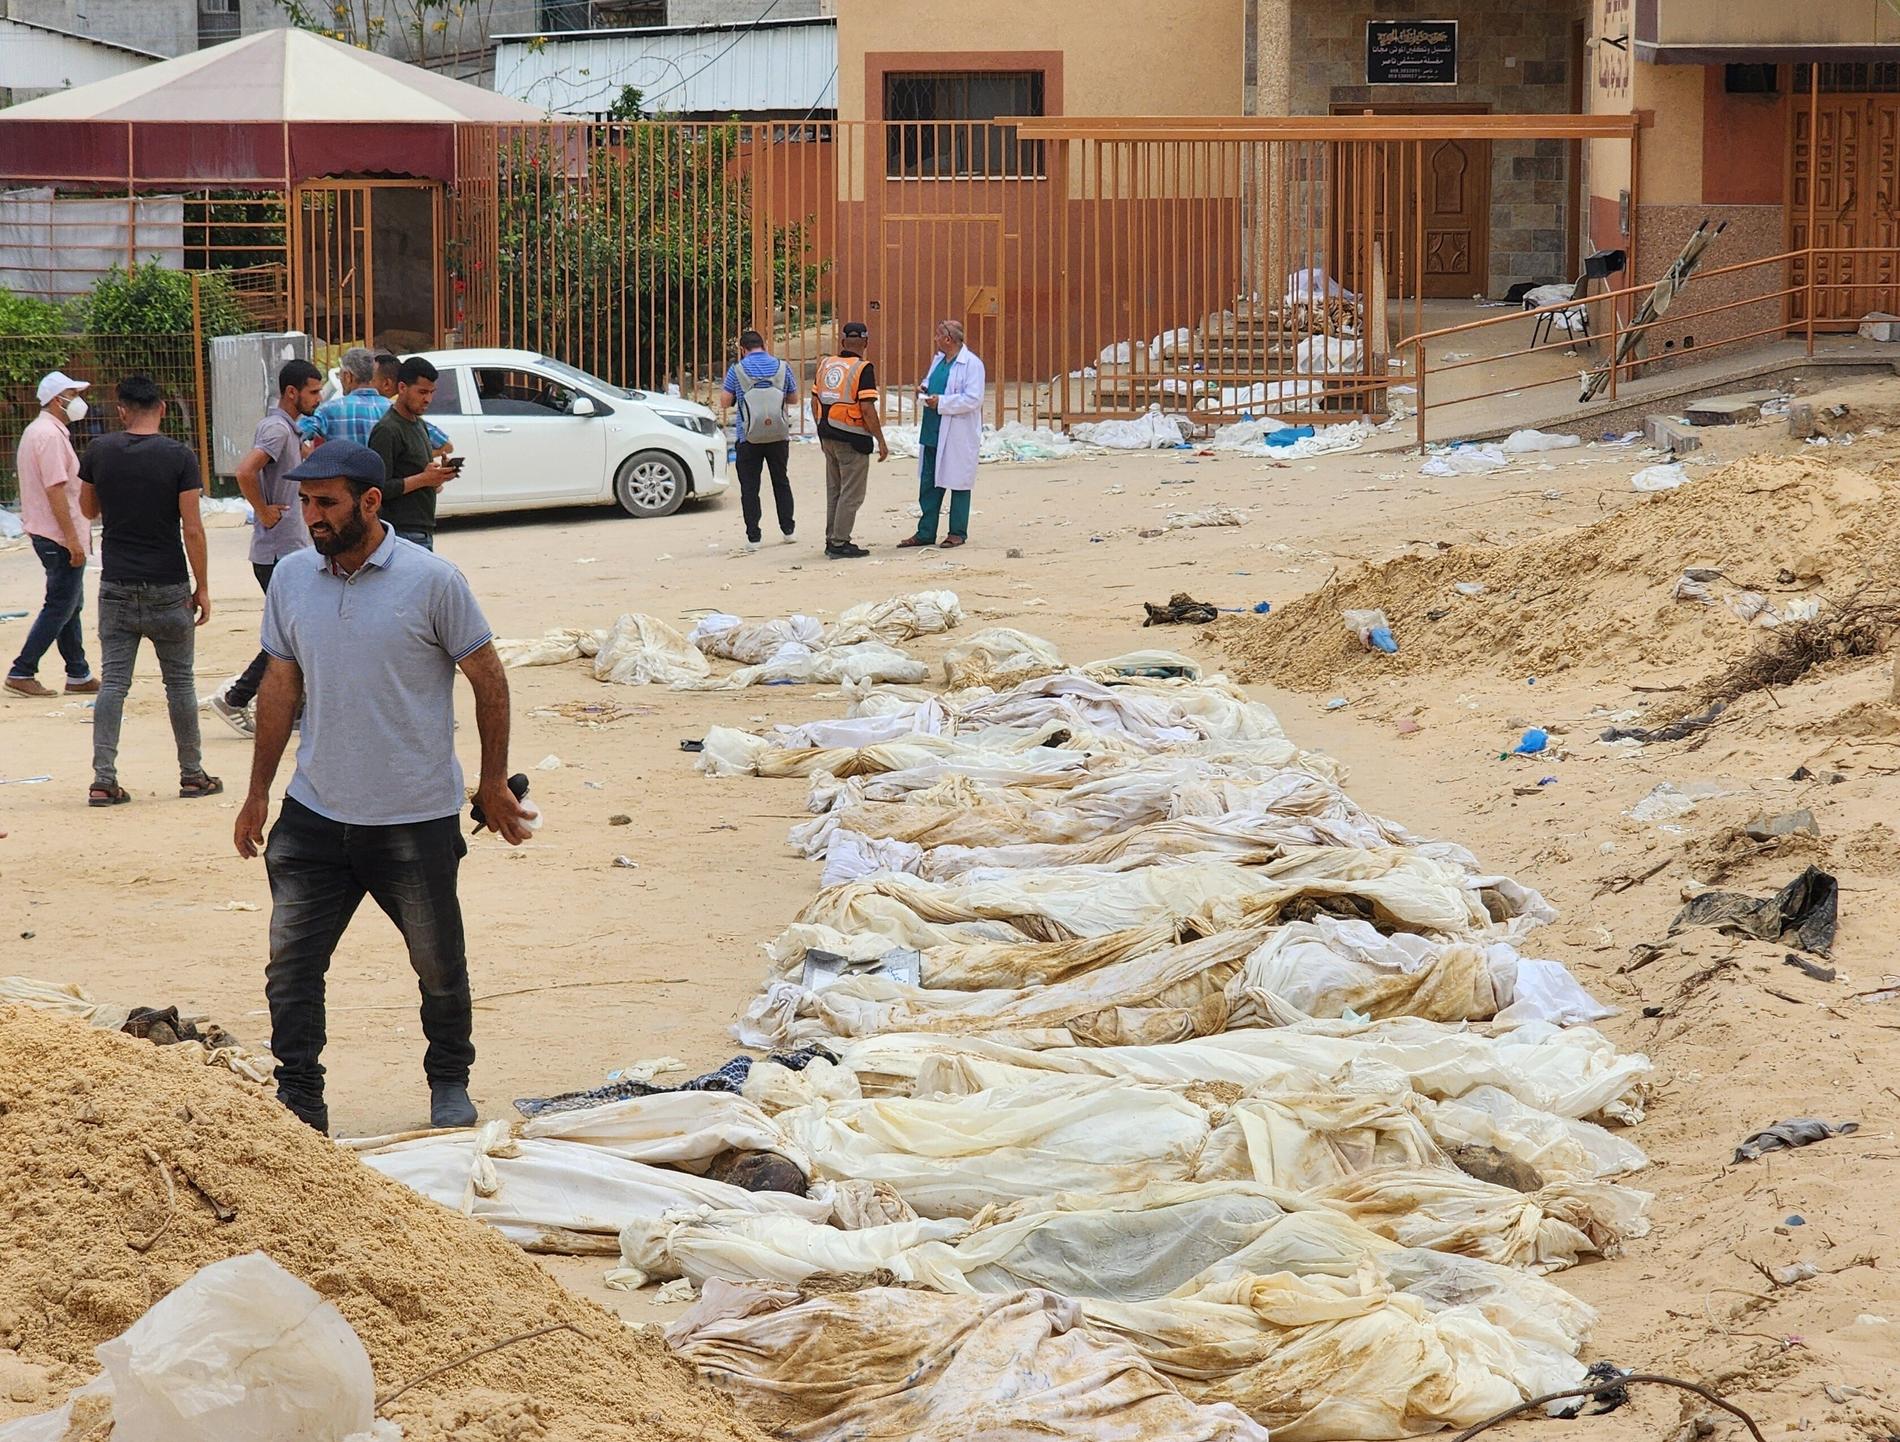 Nära 400 dödade palestiniers kroppar har hittats i massgravar i Gaza, enligt uppgifter.